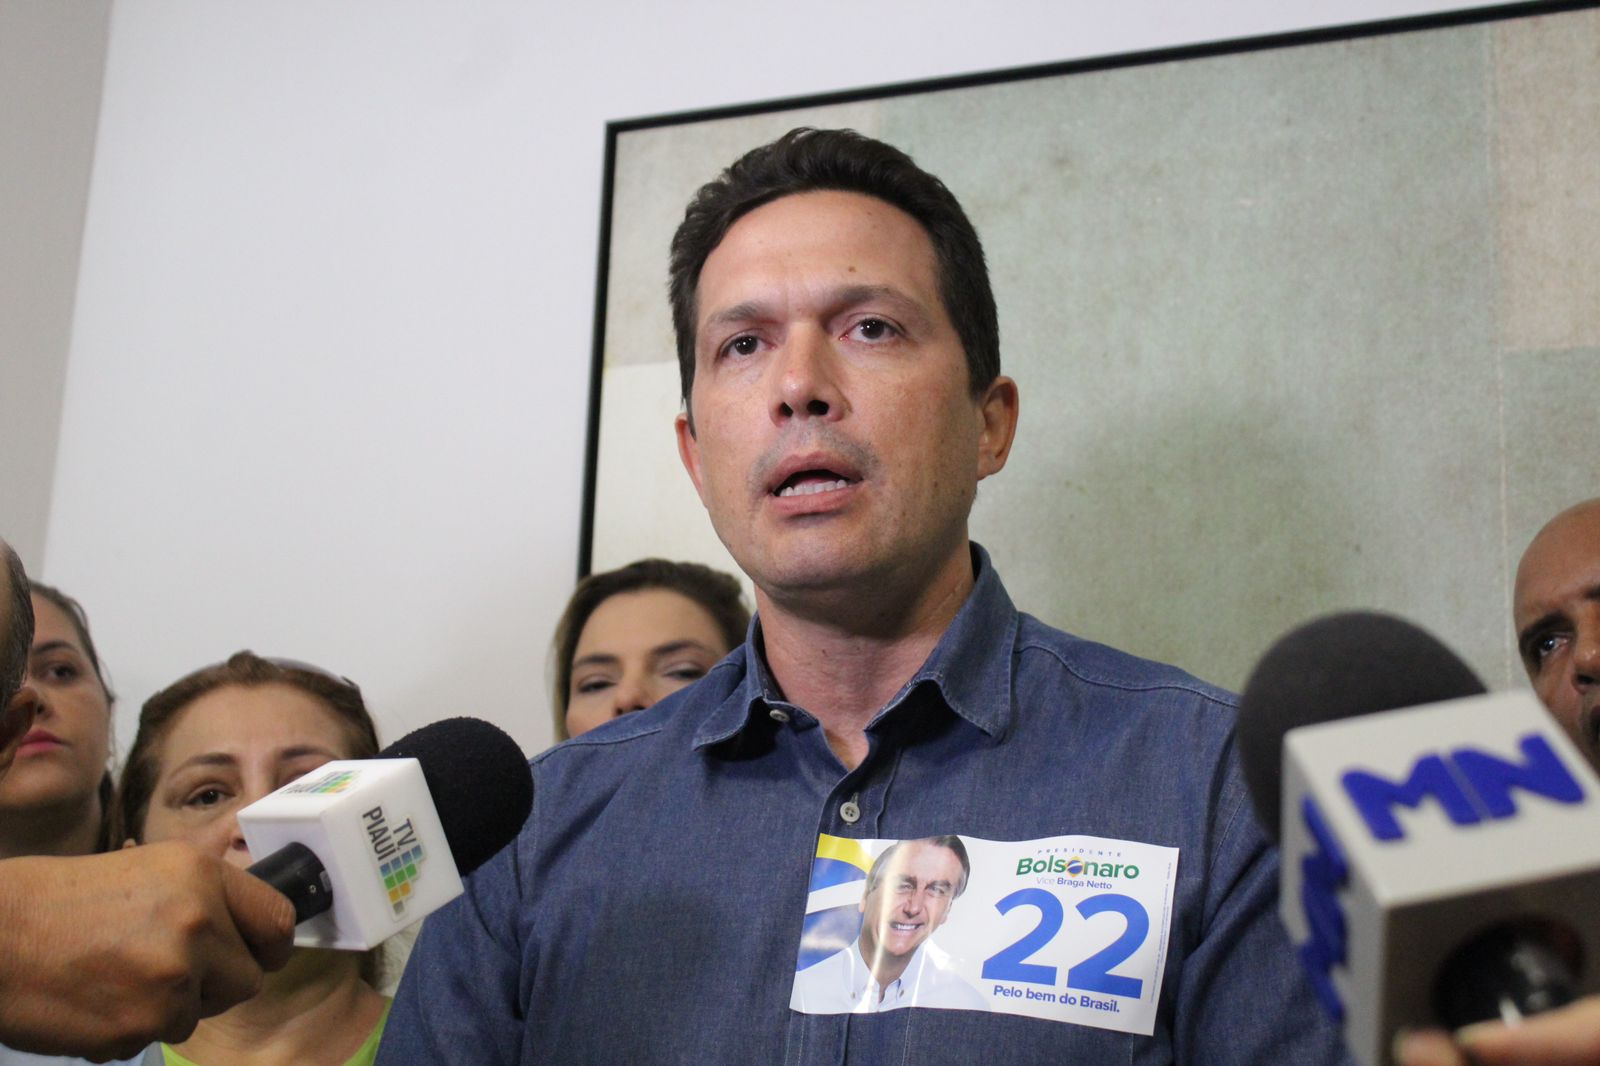 Diego Melo sai da disputa, mas avisa que continua na campanha por Bolsonaro (Foto: Raissa Morais)